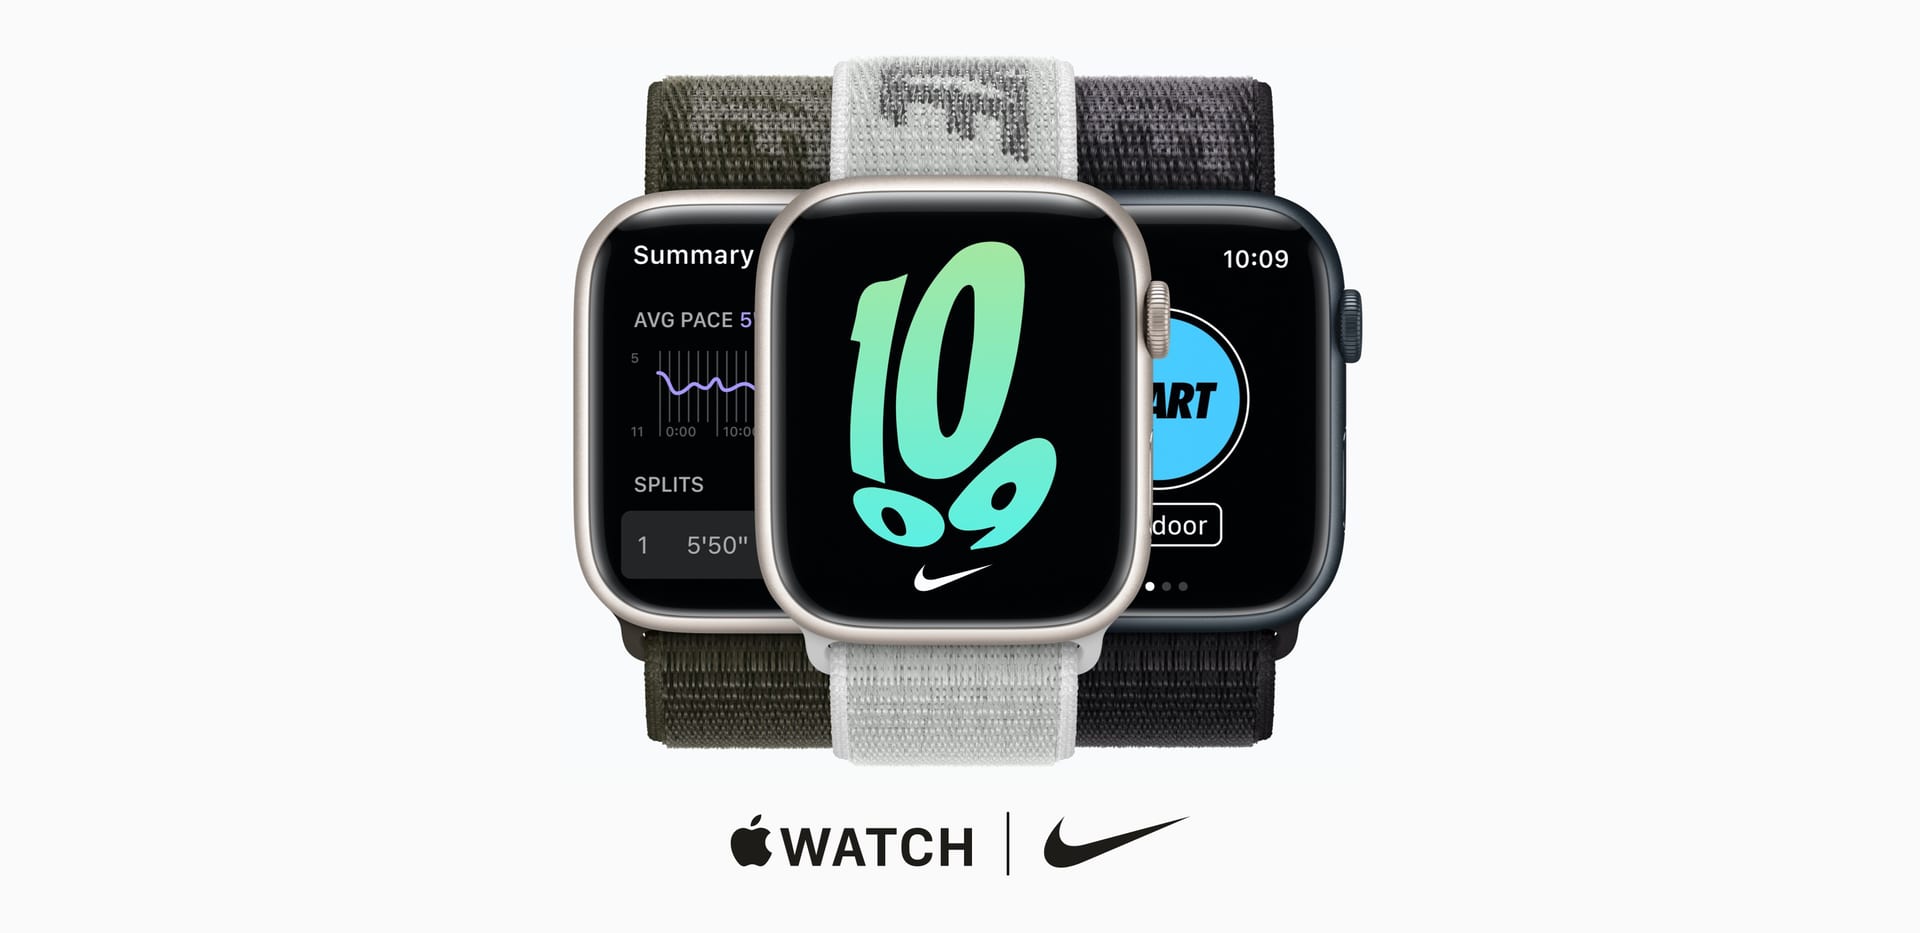 Apple Watch Nike. Nike.com